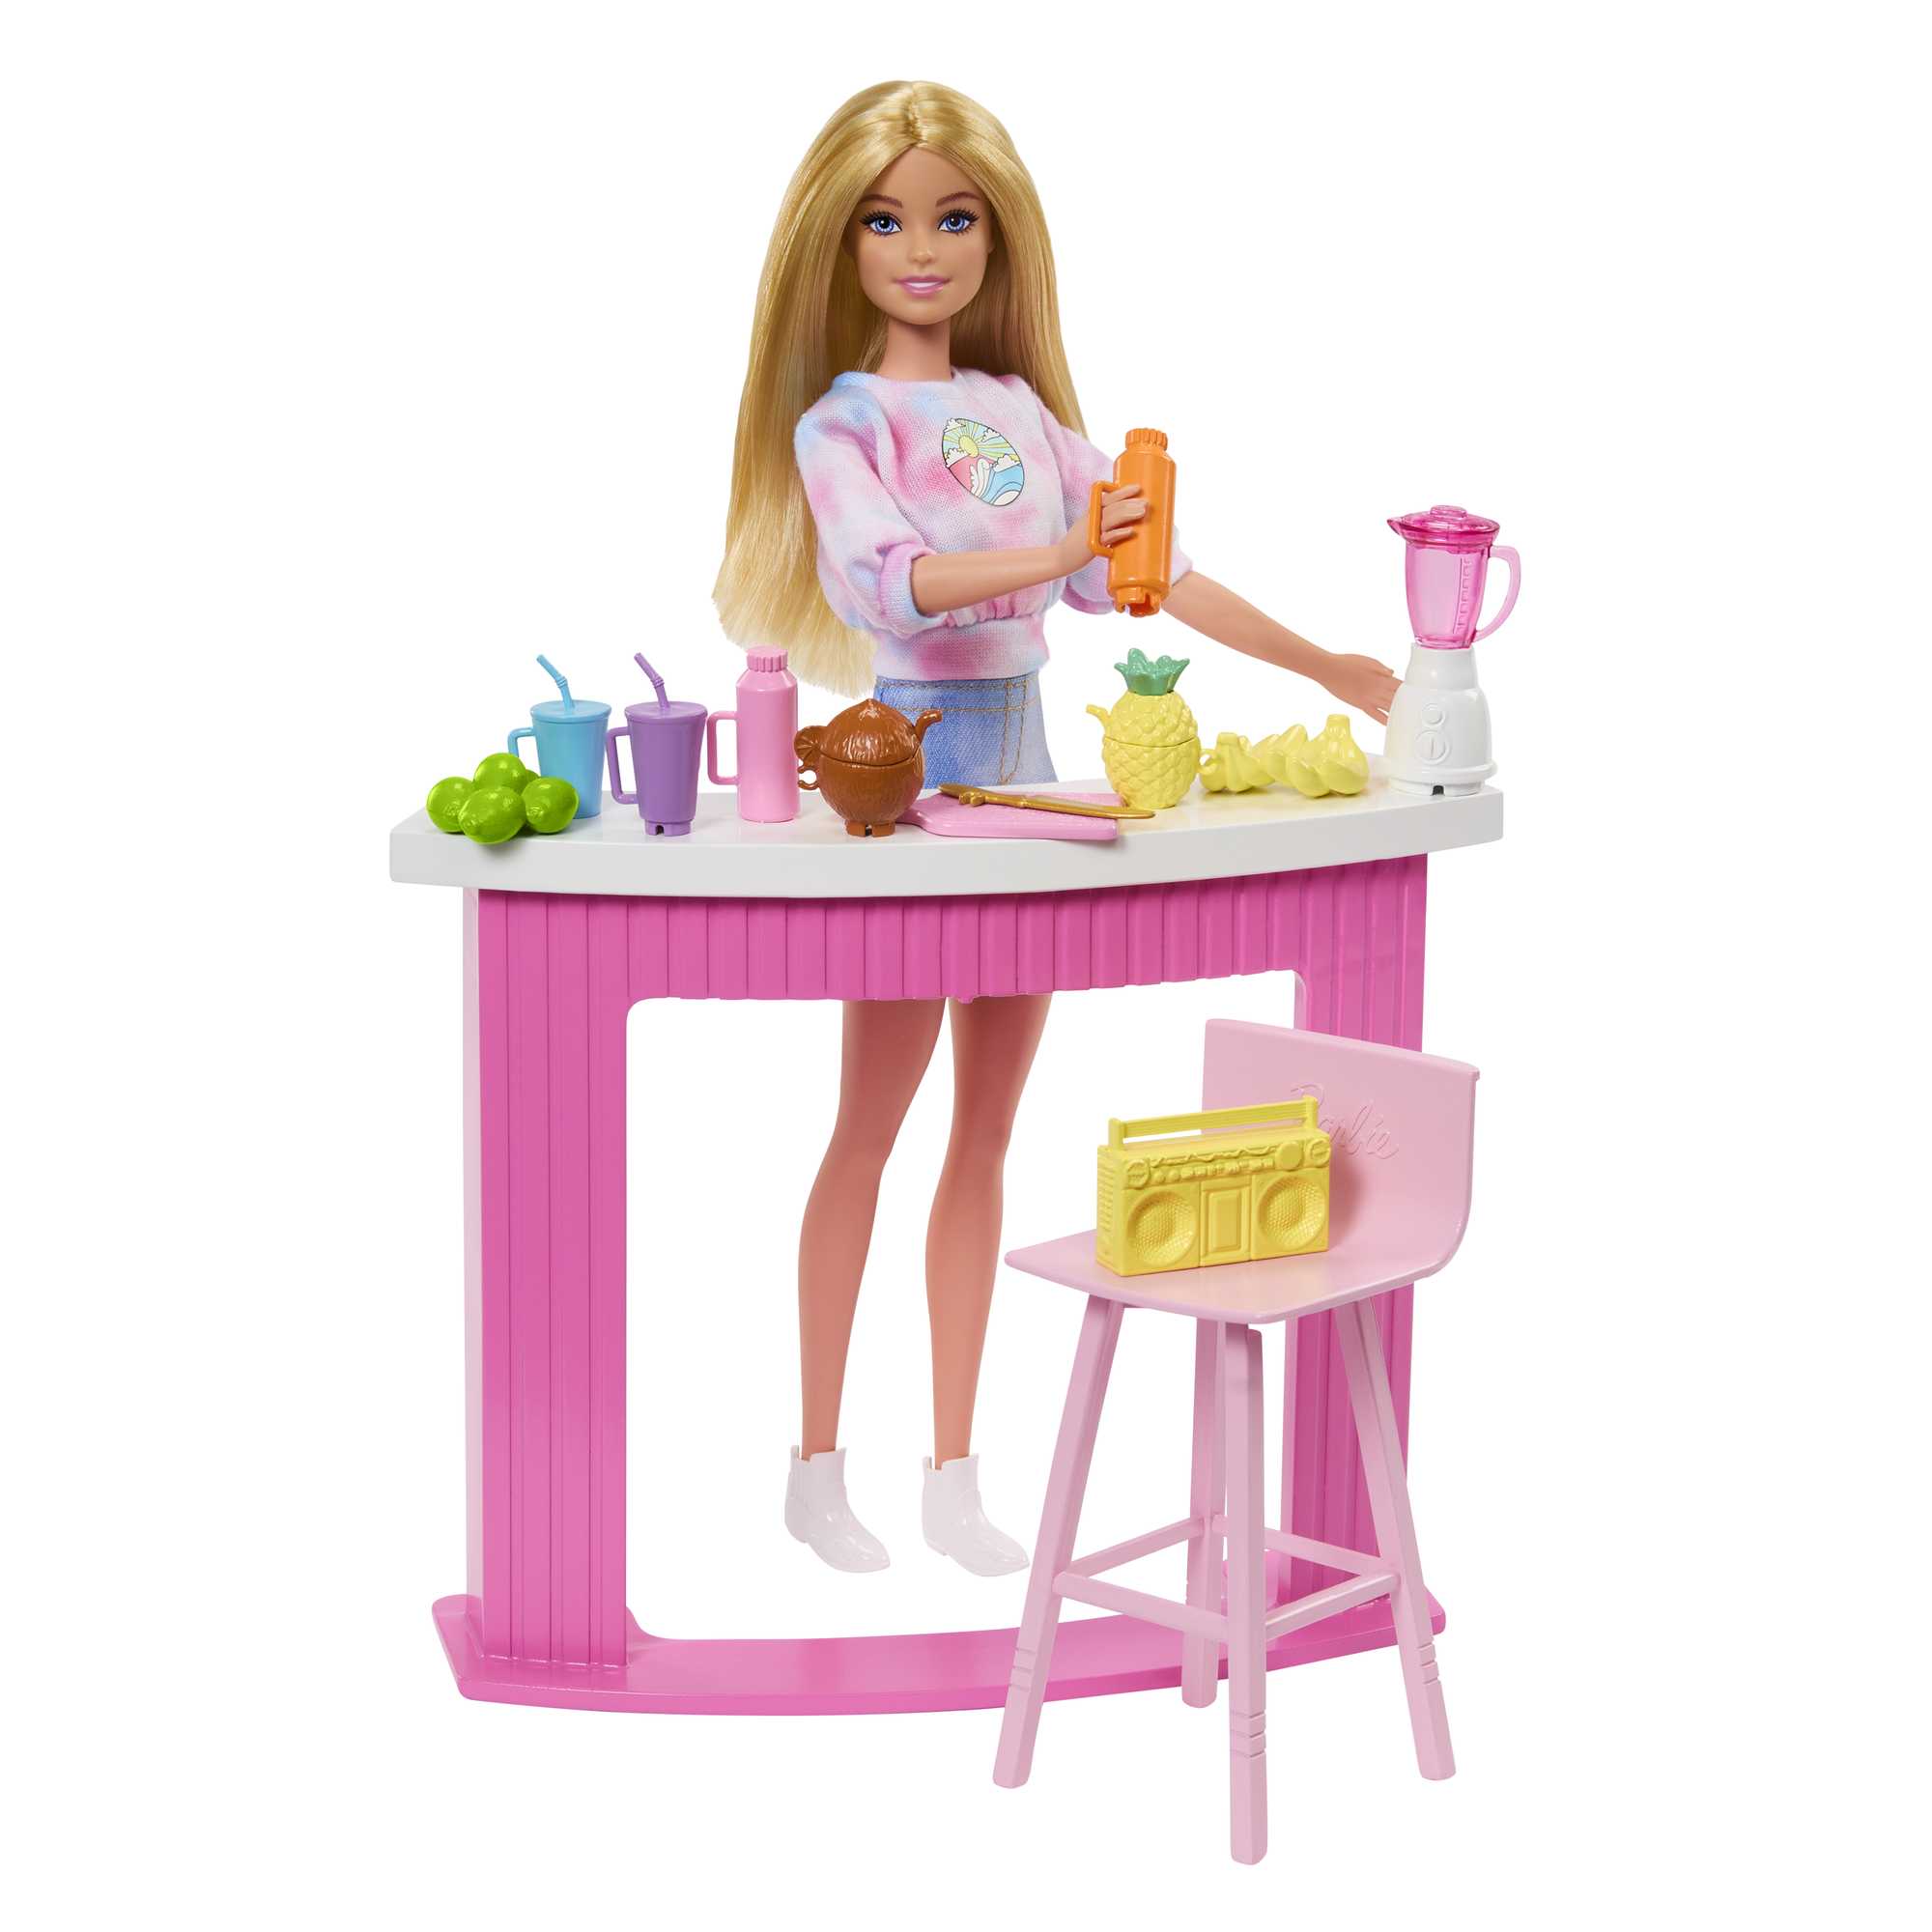 Casa de Bonecas Barbie em Estilo IKEA « Blog de Brinquedo